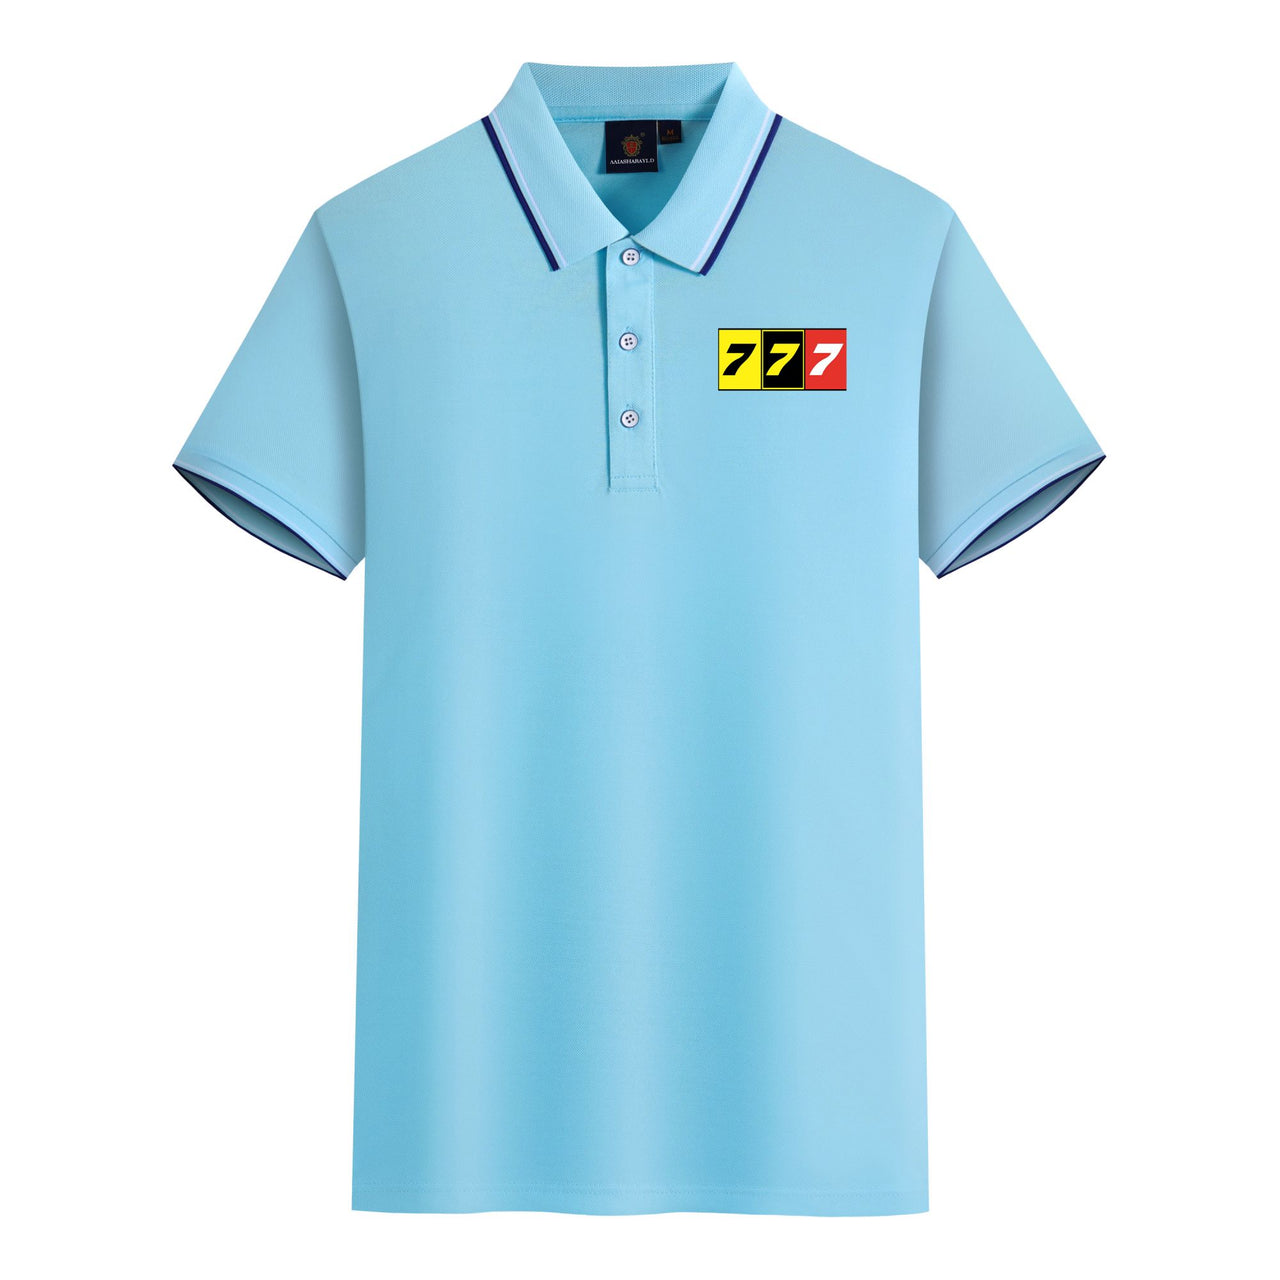 Flat Colourful 777 Designed Stylish Polo T-Shirts